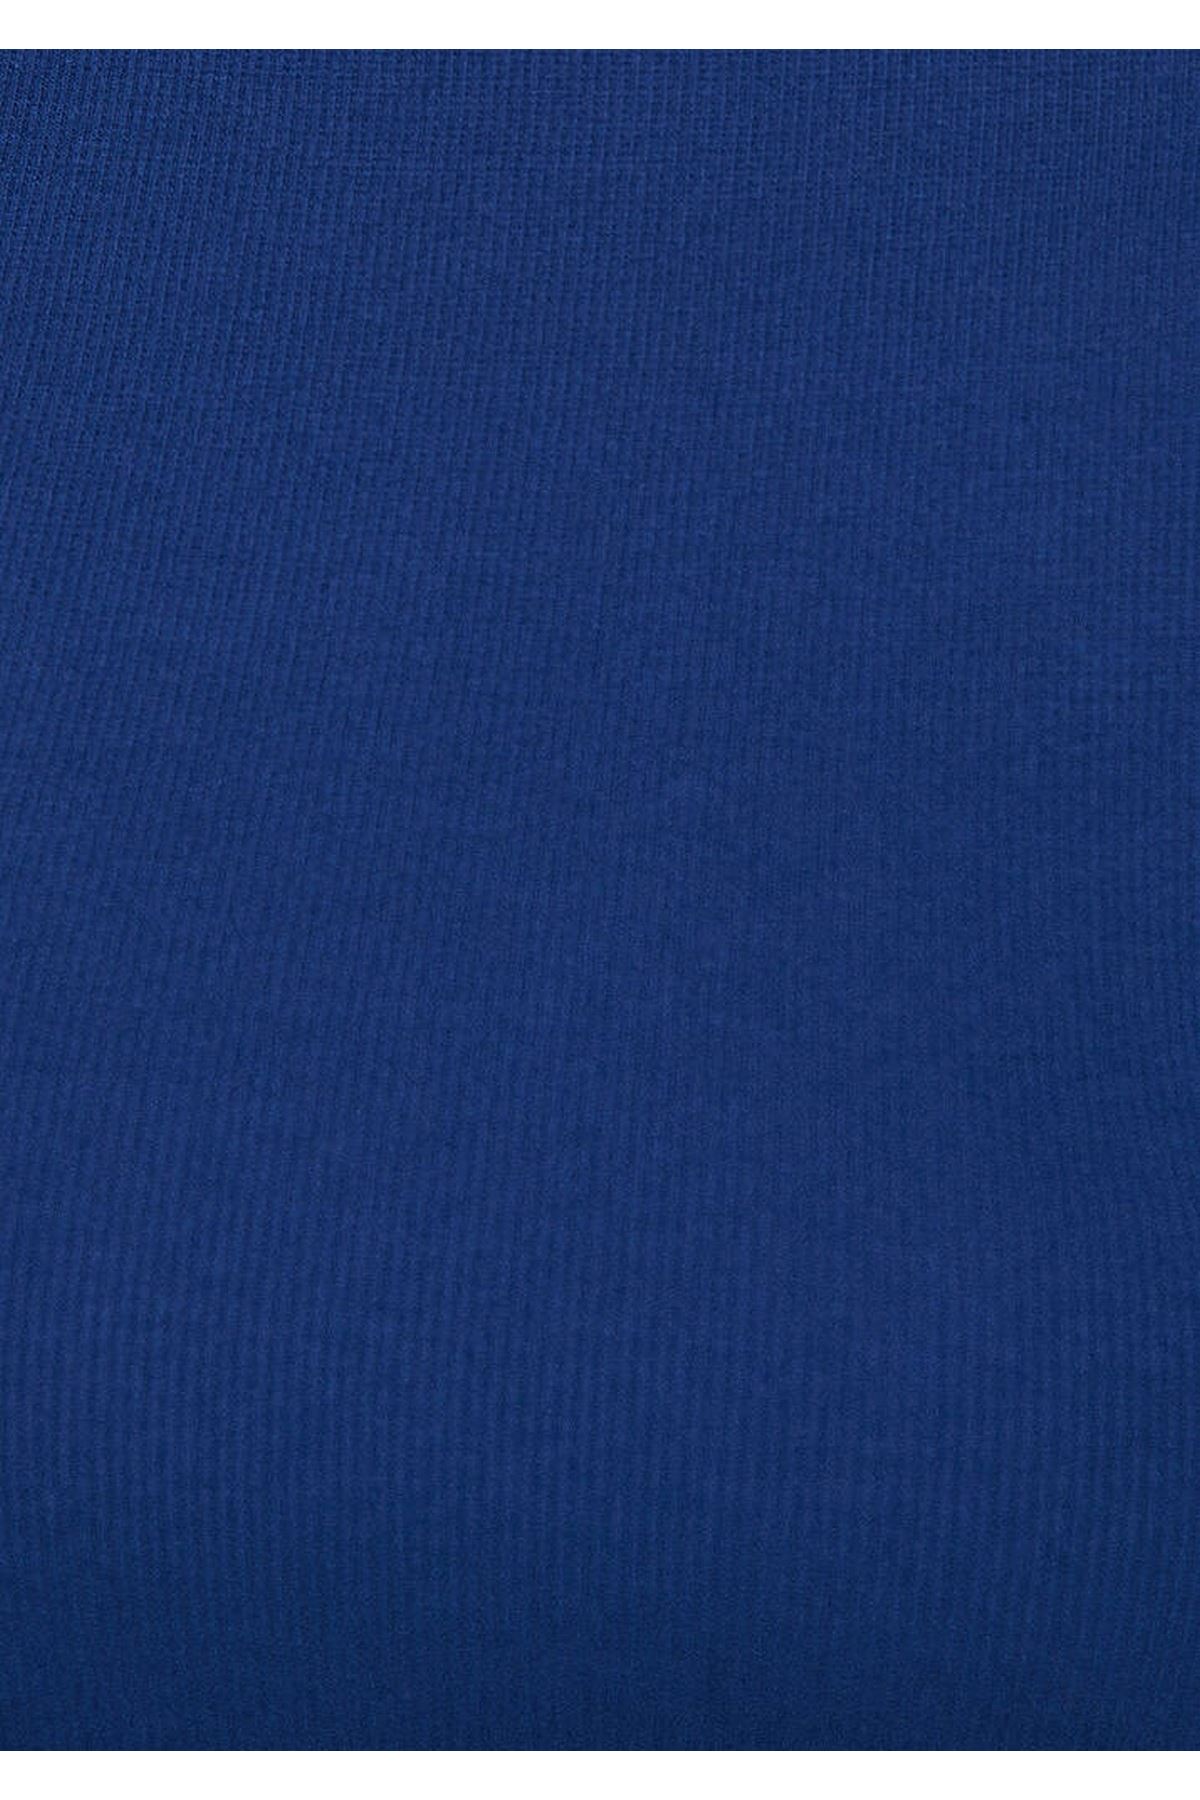 Uzun Kol  Mavi Kadın Mavi Tişört - M1611227-70491